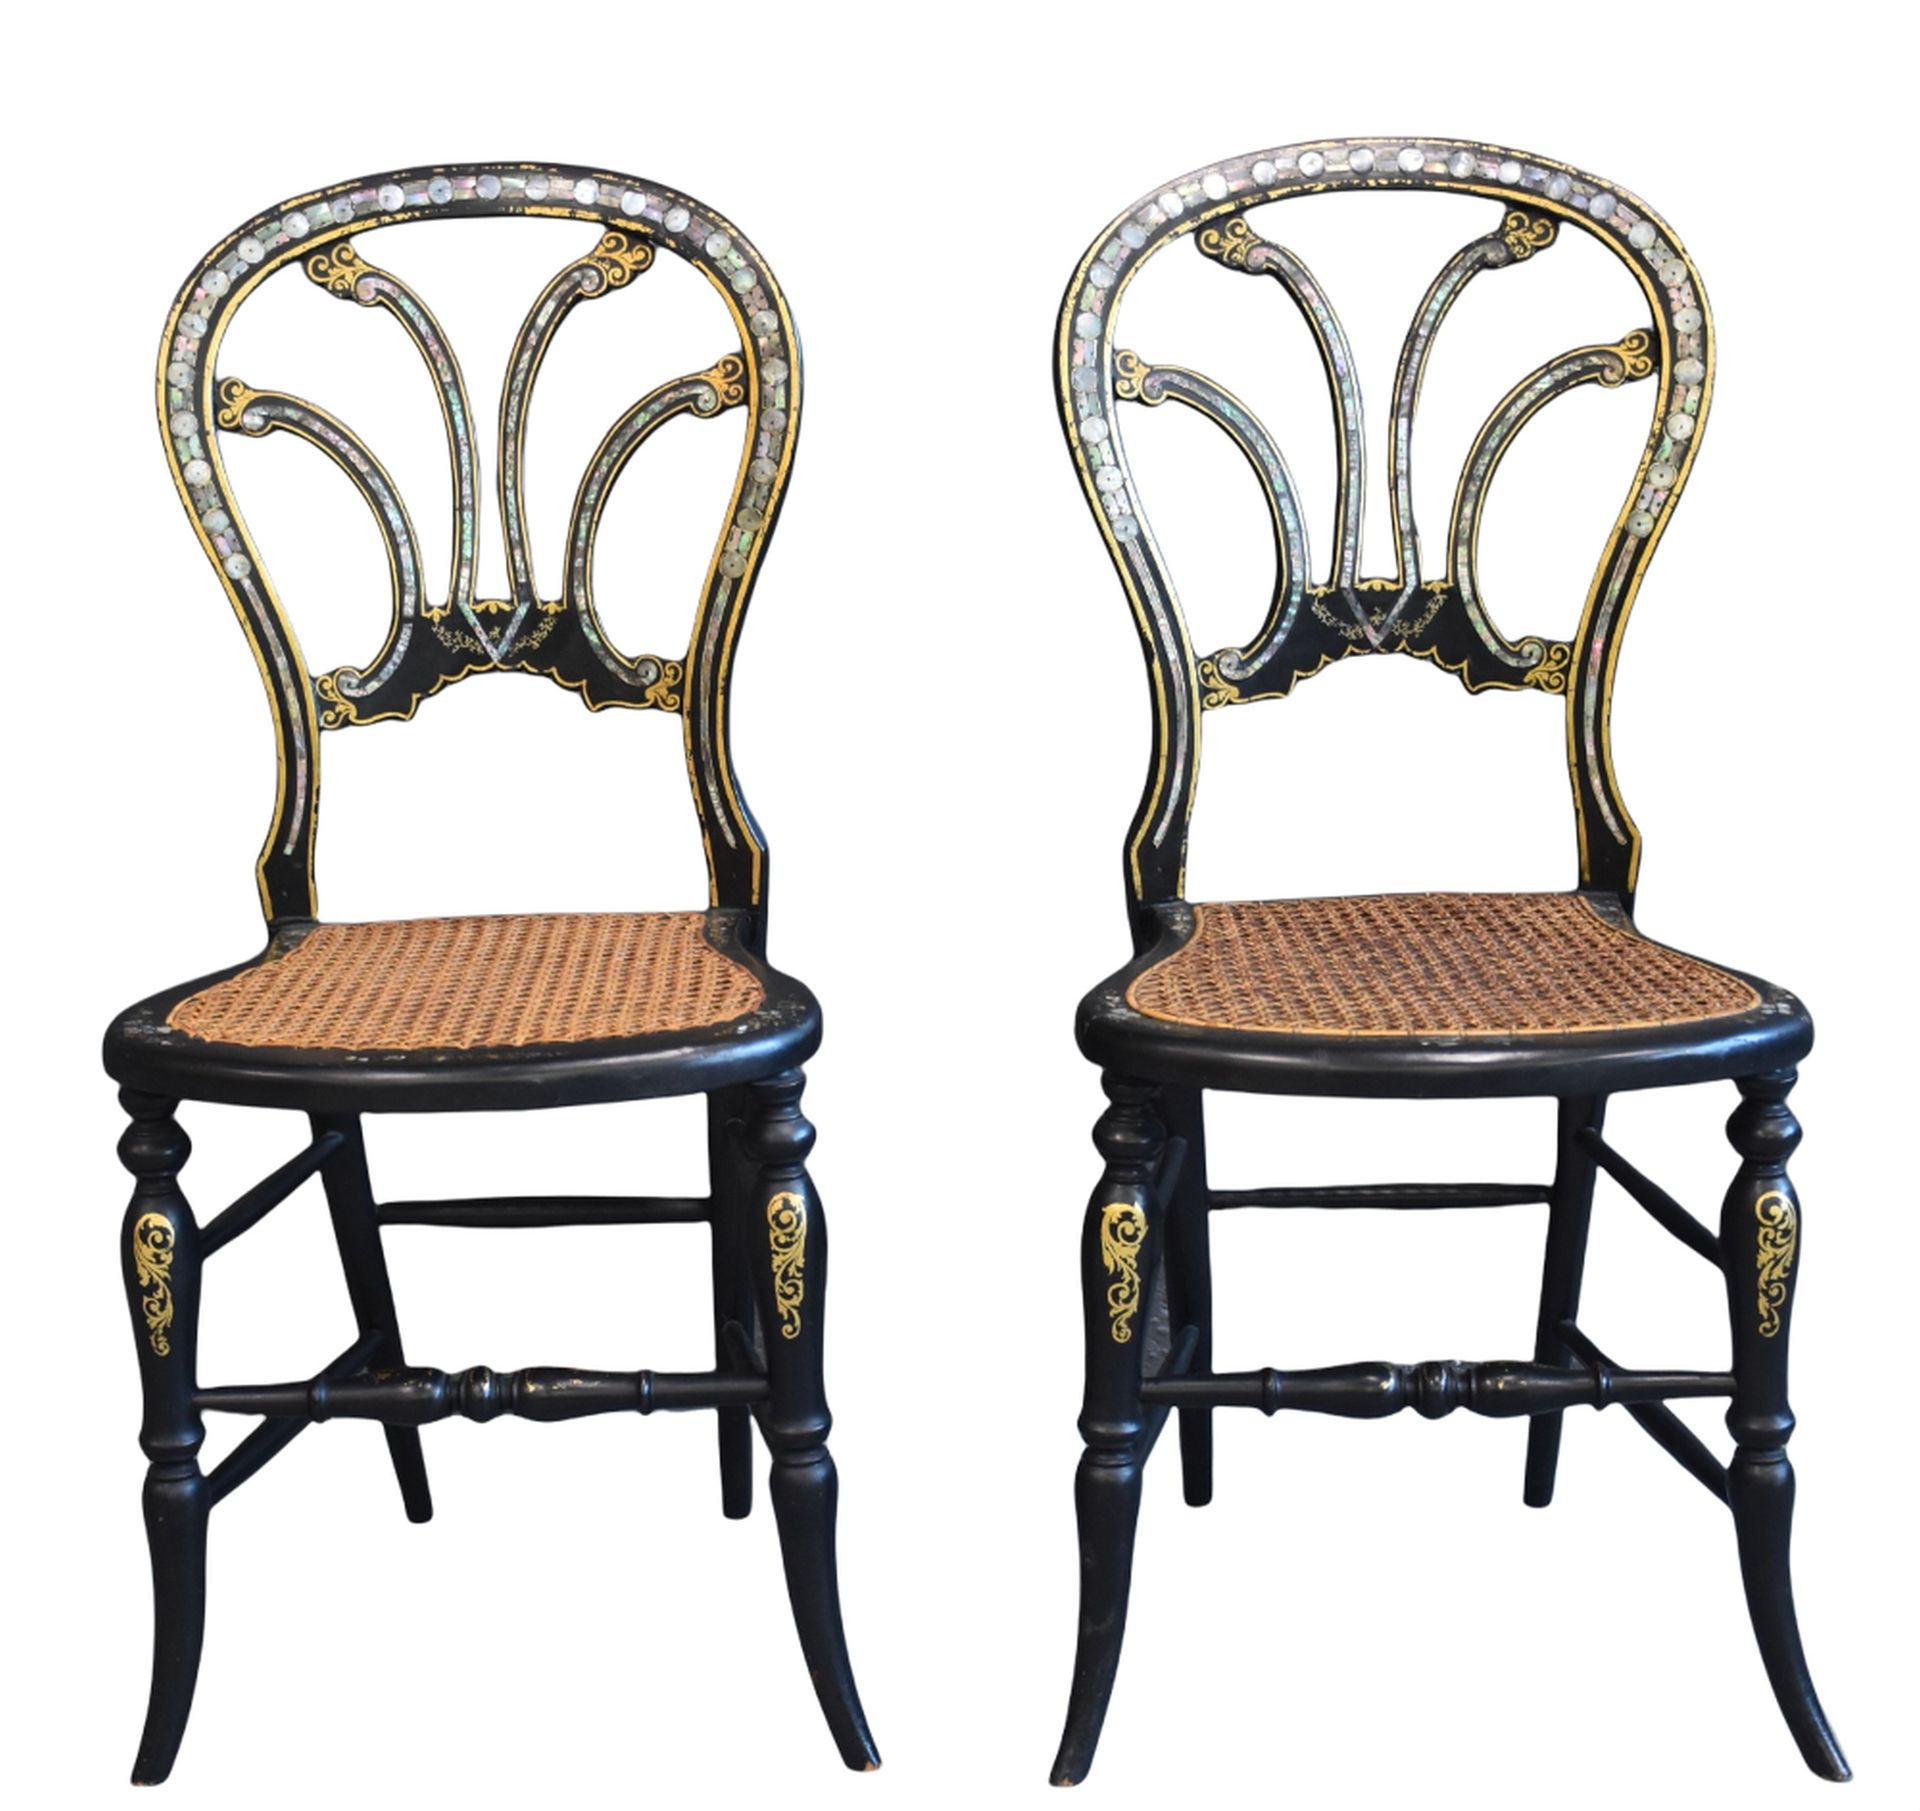 Null 一对拿破仑三世时期的椅子，嵌有珍珠母。 

荷兰：一对拿破仑三世时期的椅子，镶嵌有珍珠母。